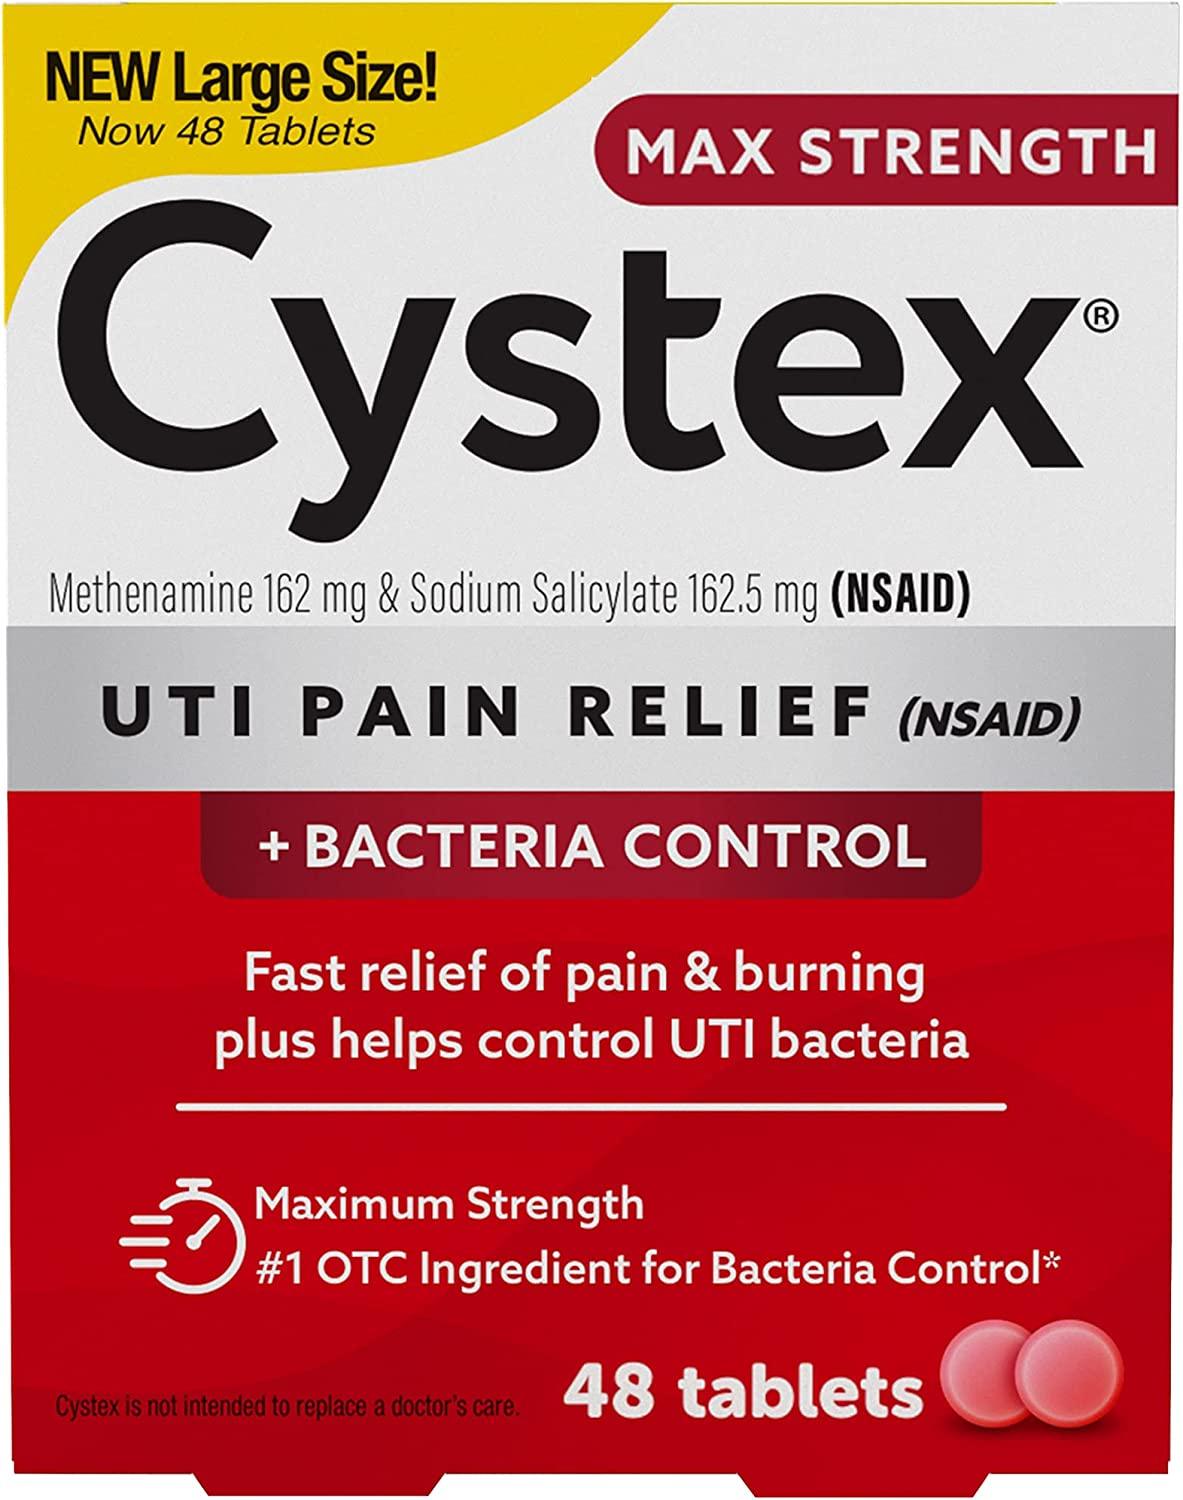 Cystex Soulagement de la Douleur d'Infection Urinaire UTI - mondialpharma.com